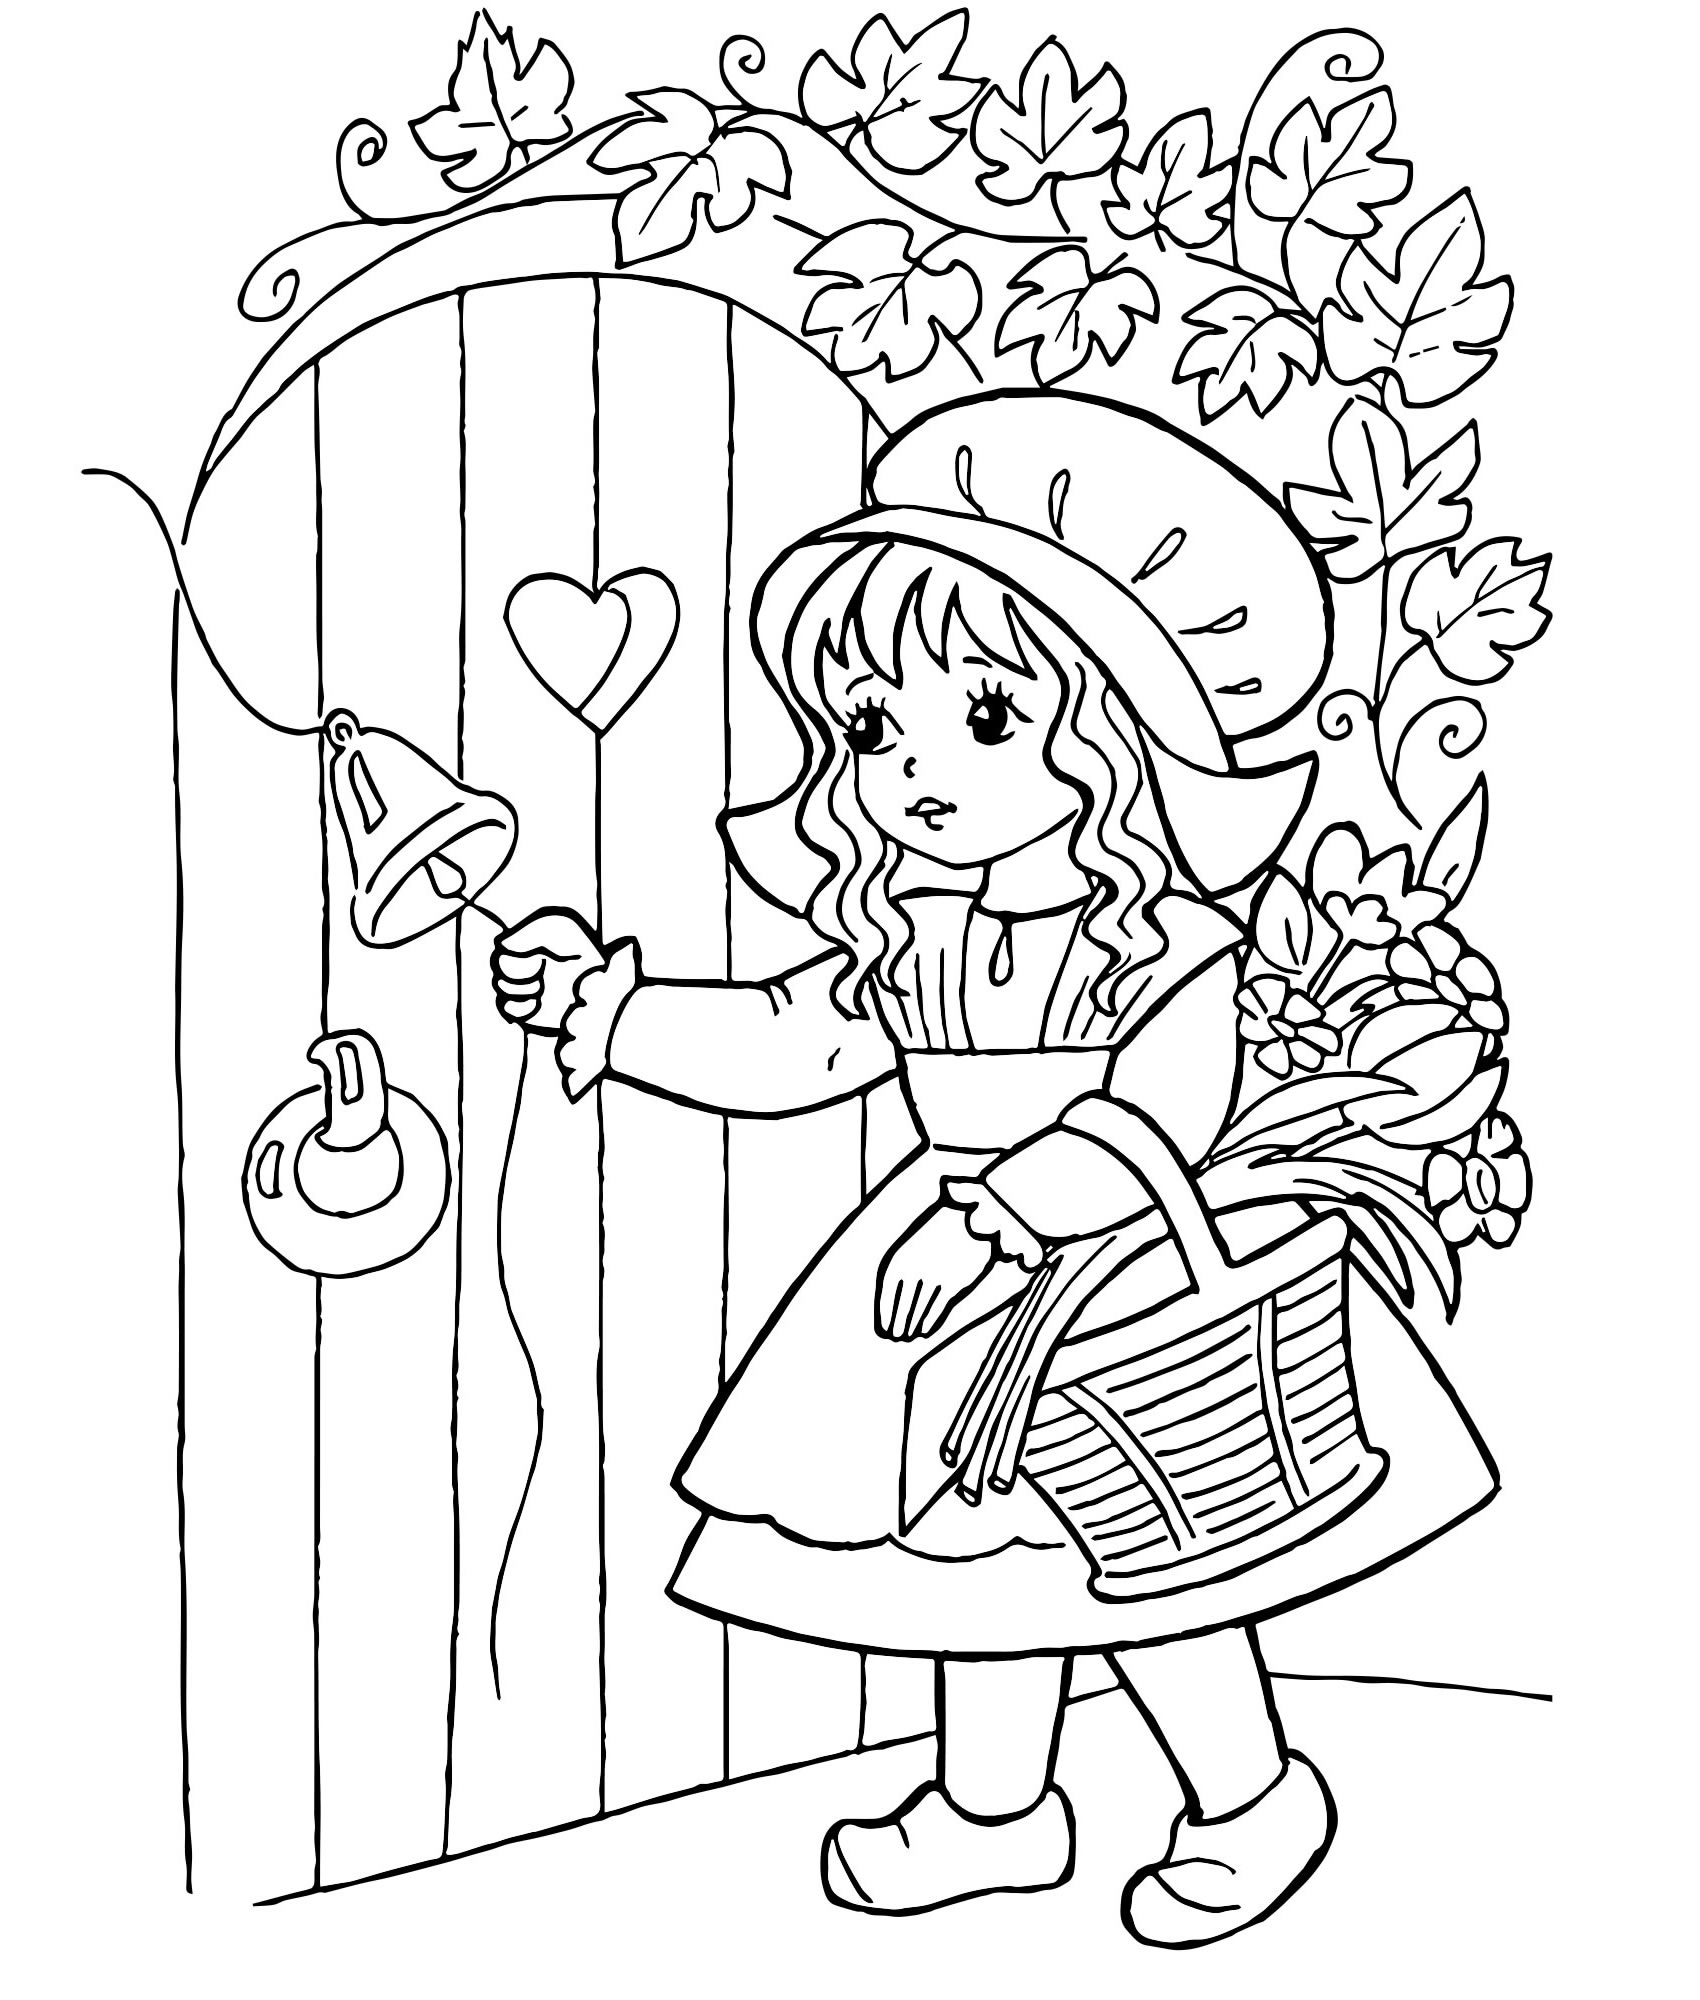 Красная Шапочка у двери раскраска для детей